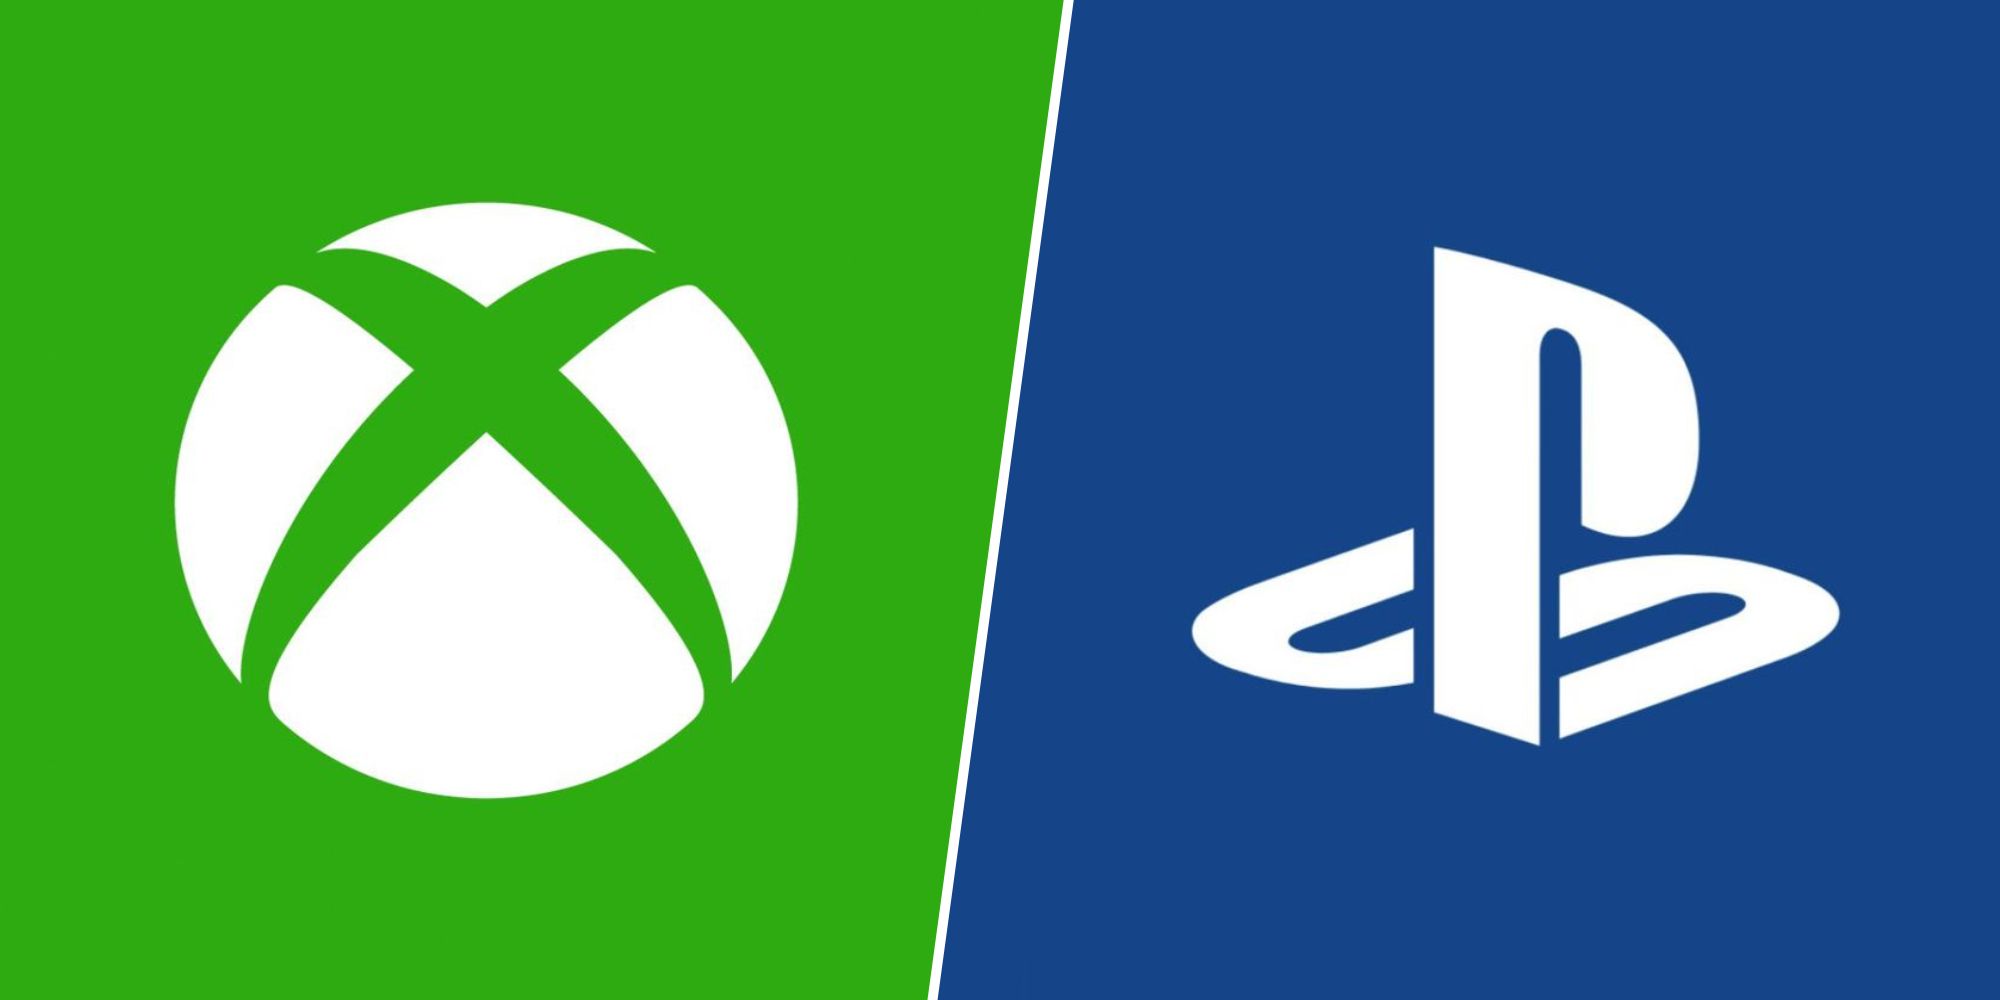 Xbox and PlayStation logos